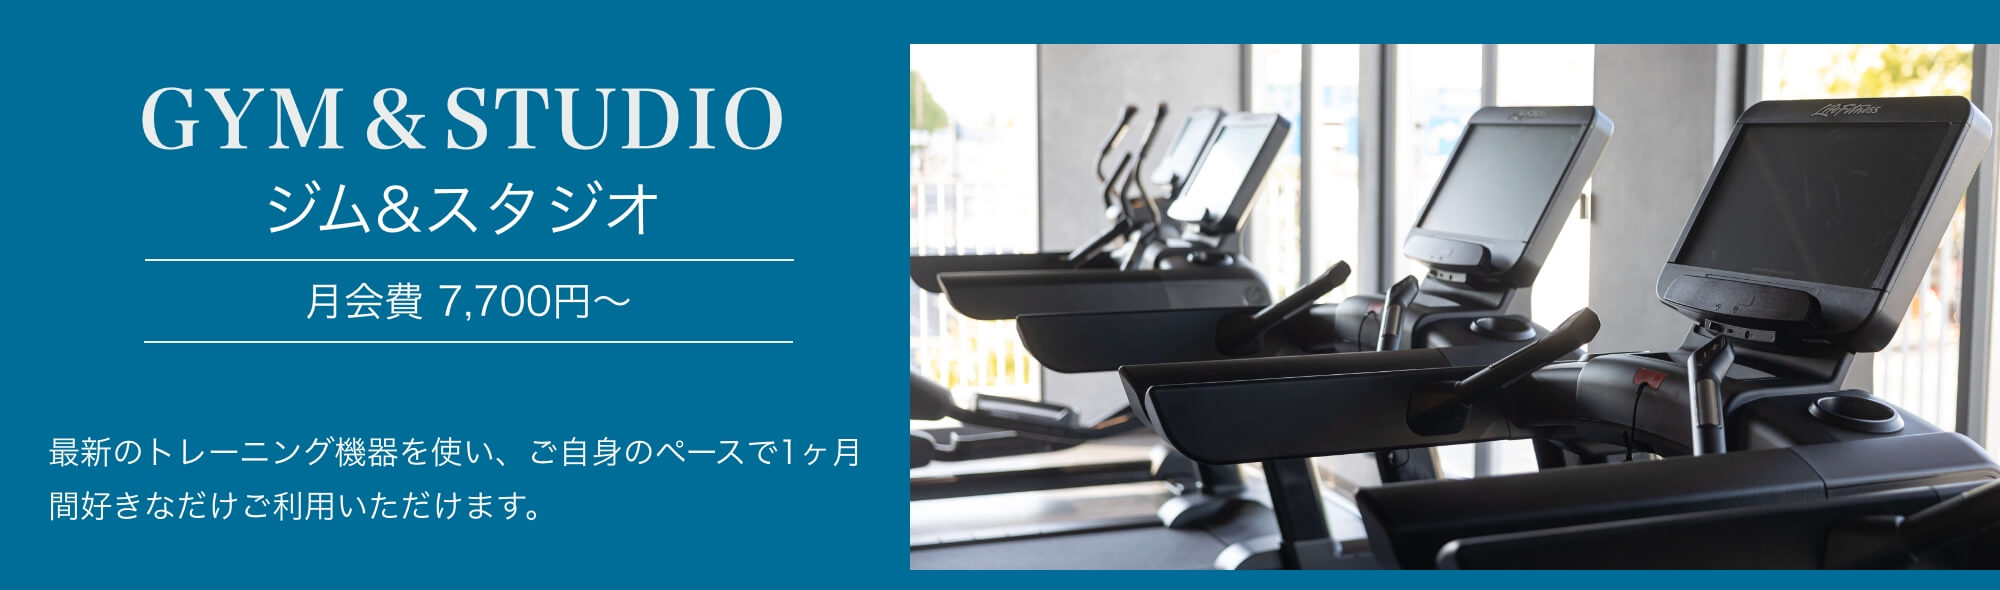 Z-1ジム＆スタジオ 東八三鷹店 ジム&スタジオ会員 月会費8,030円〜最新のトレーニング機器を使い、ご自身のペースで1ヶ月間好きなだけご利用いただけます。